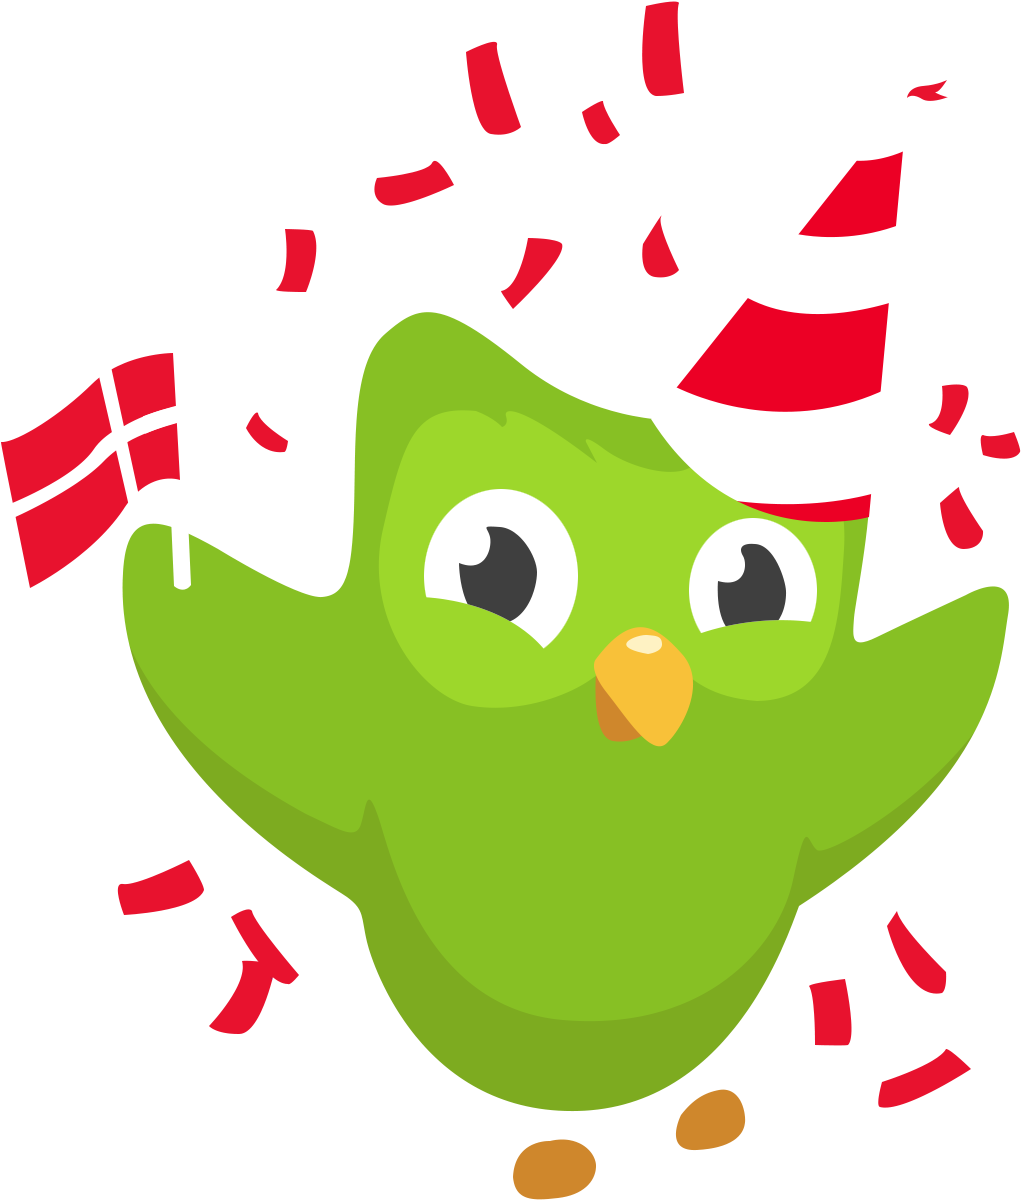 Irish And Danish Updates - Duolingo Dutch (1140x1297)